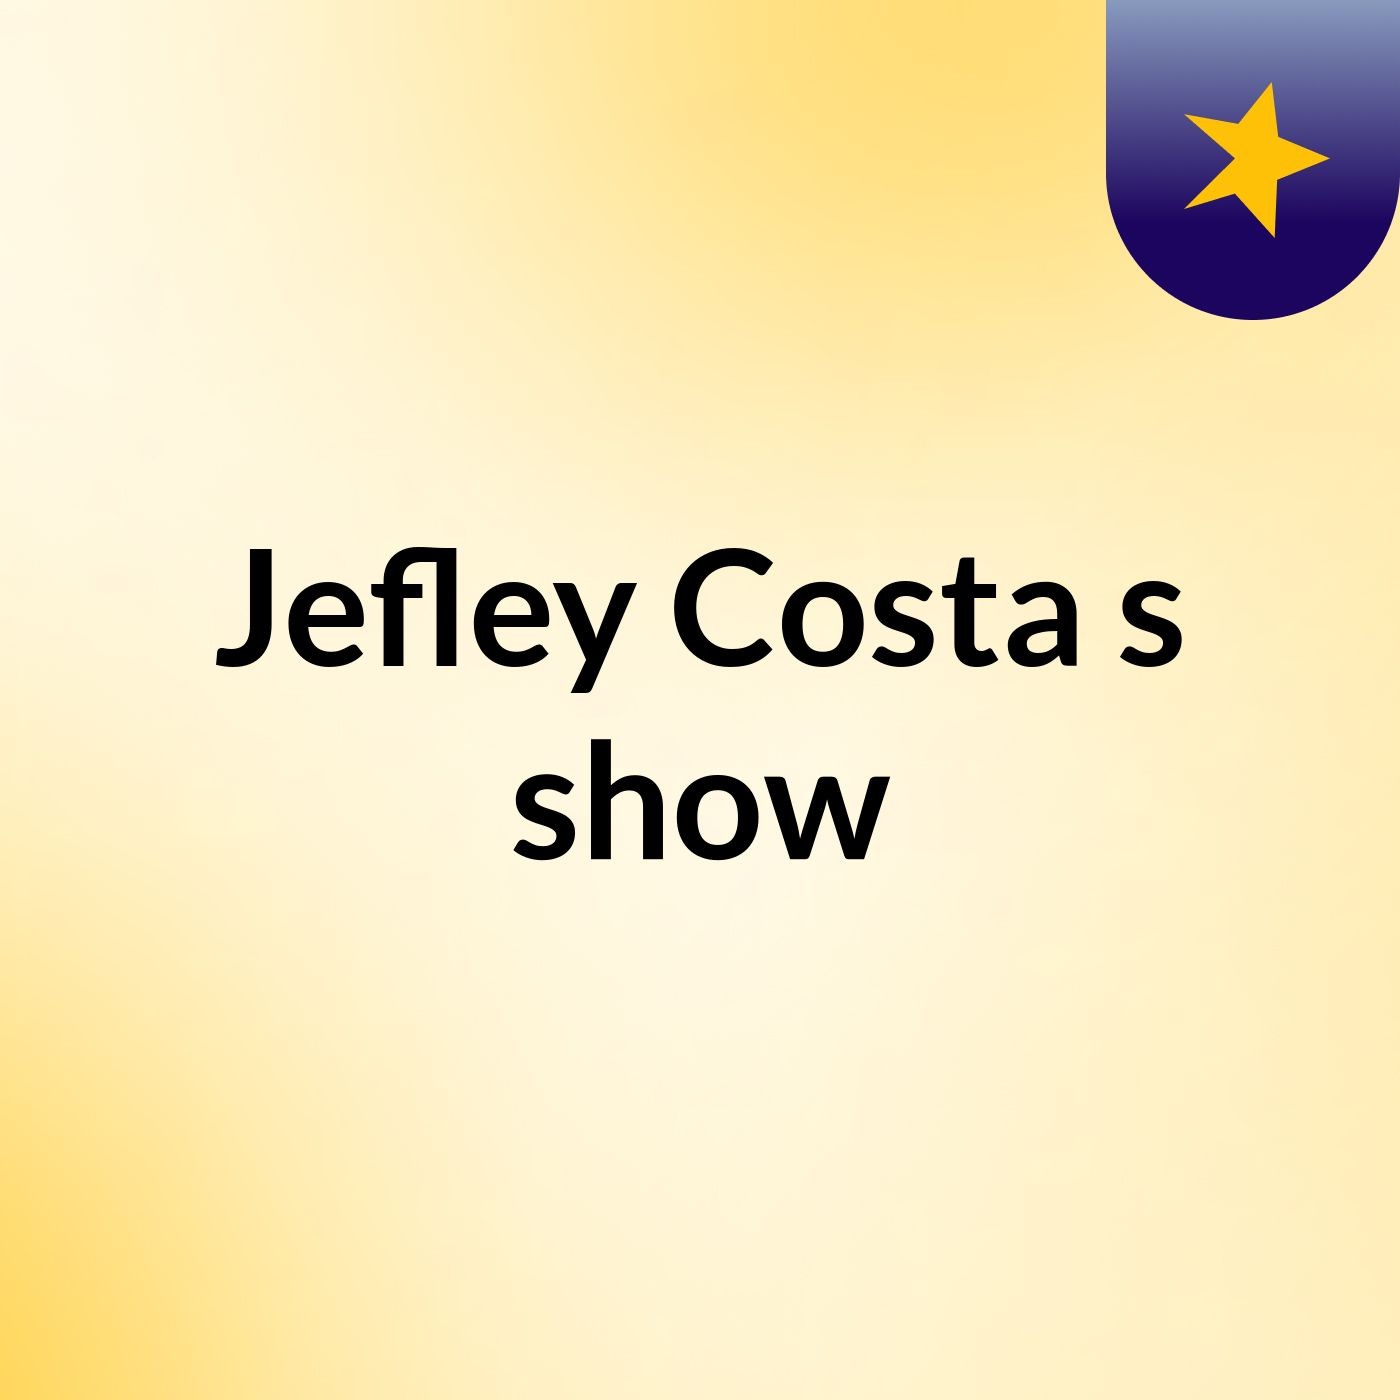 Jefley Costa's show